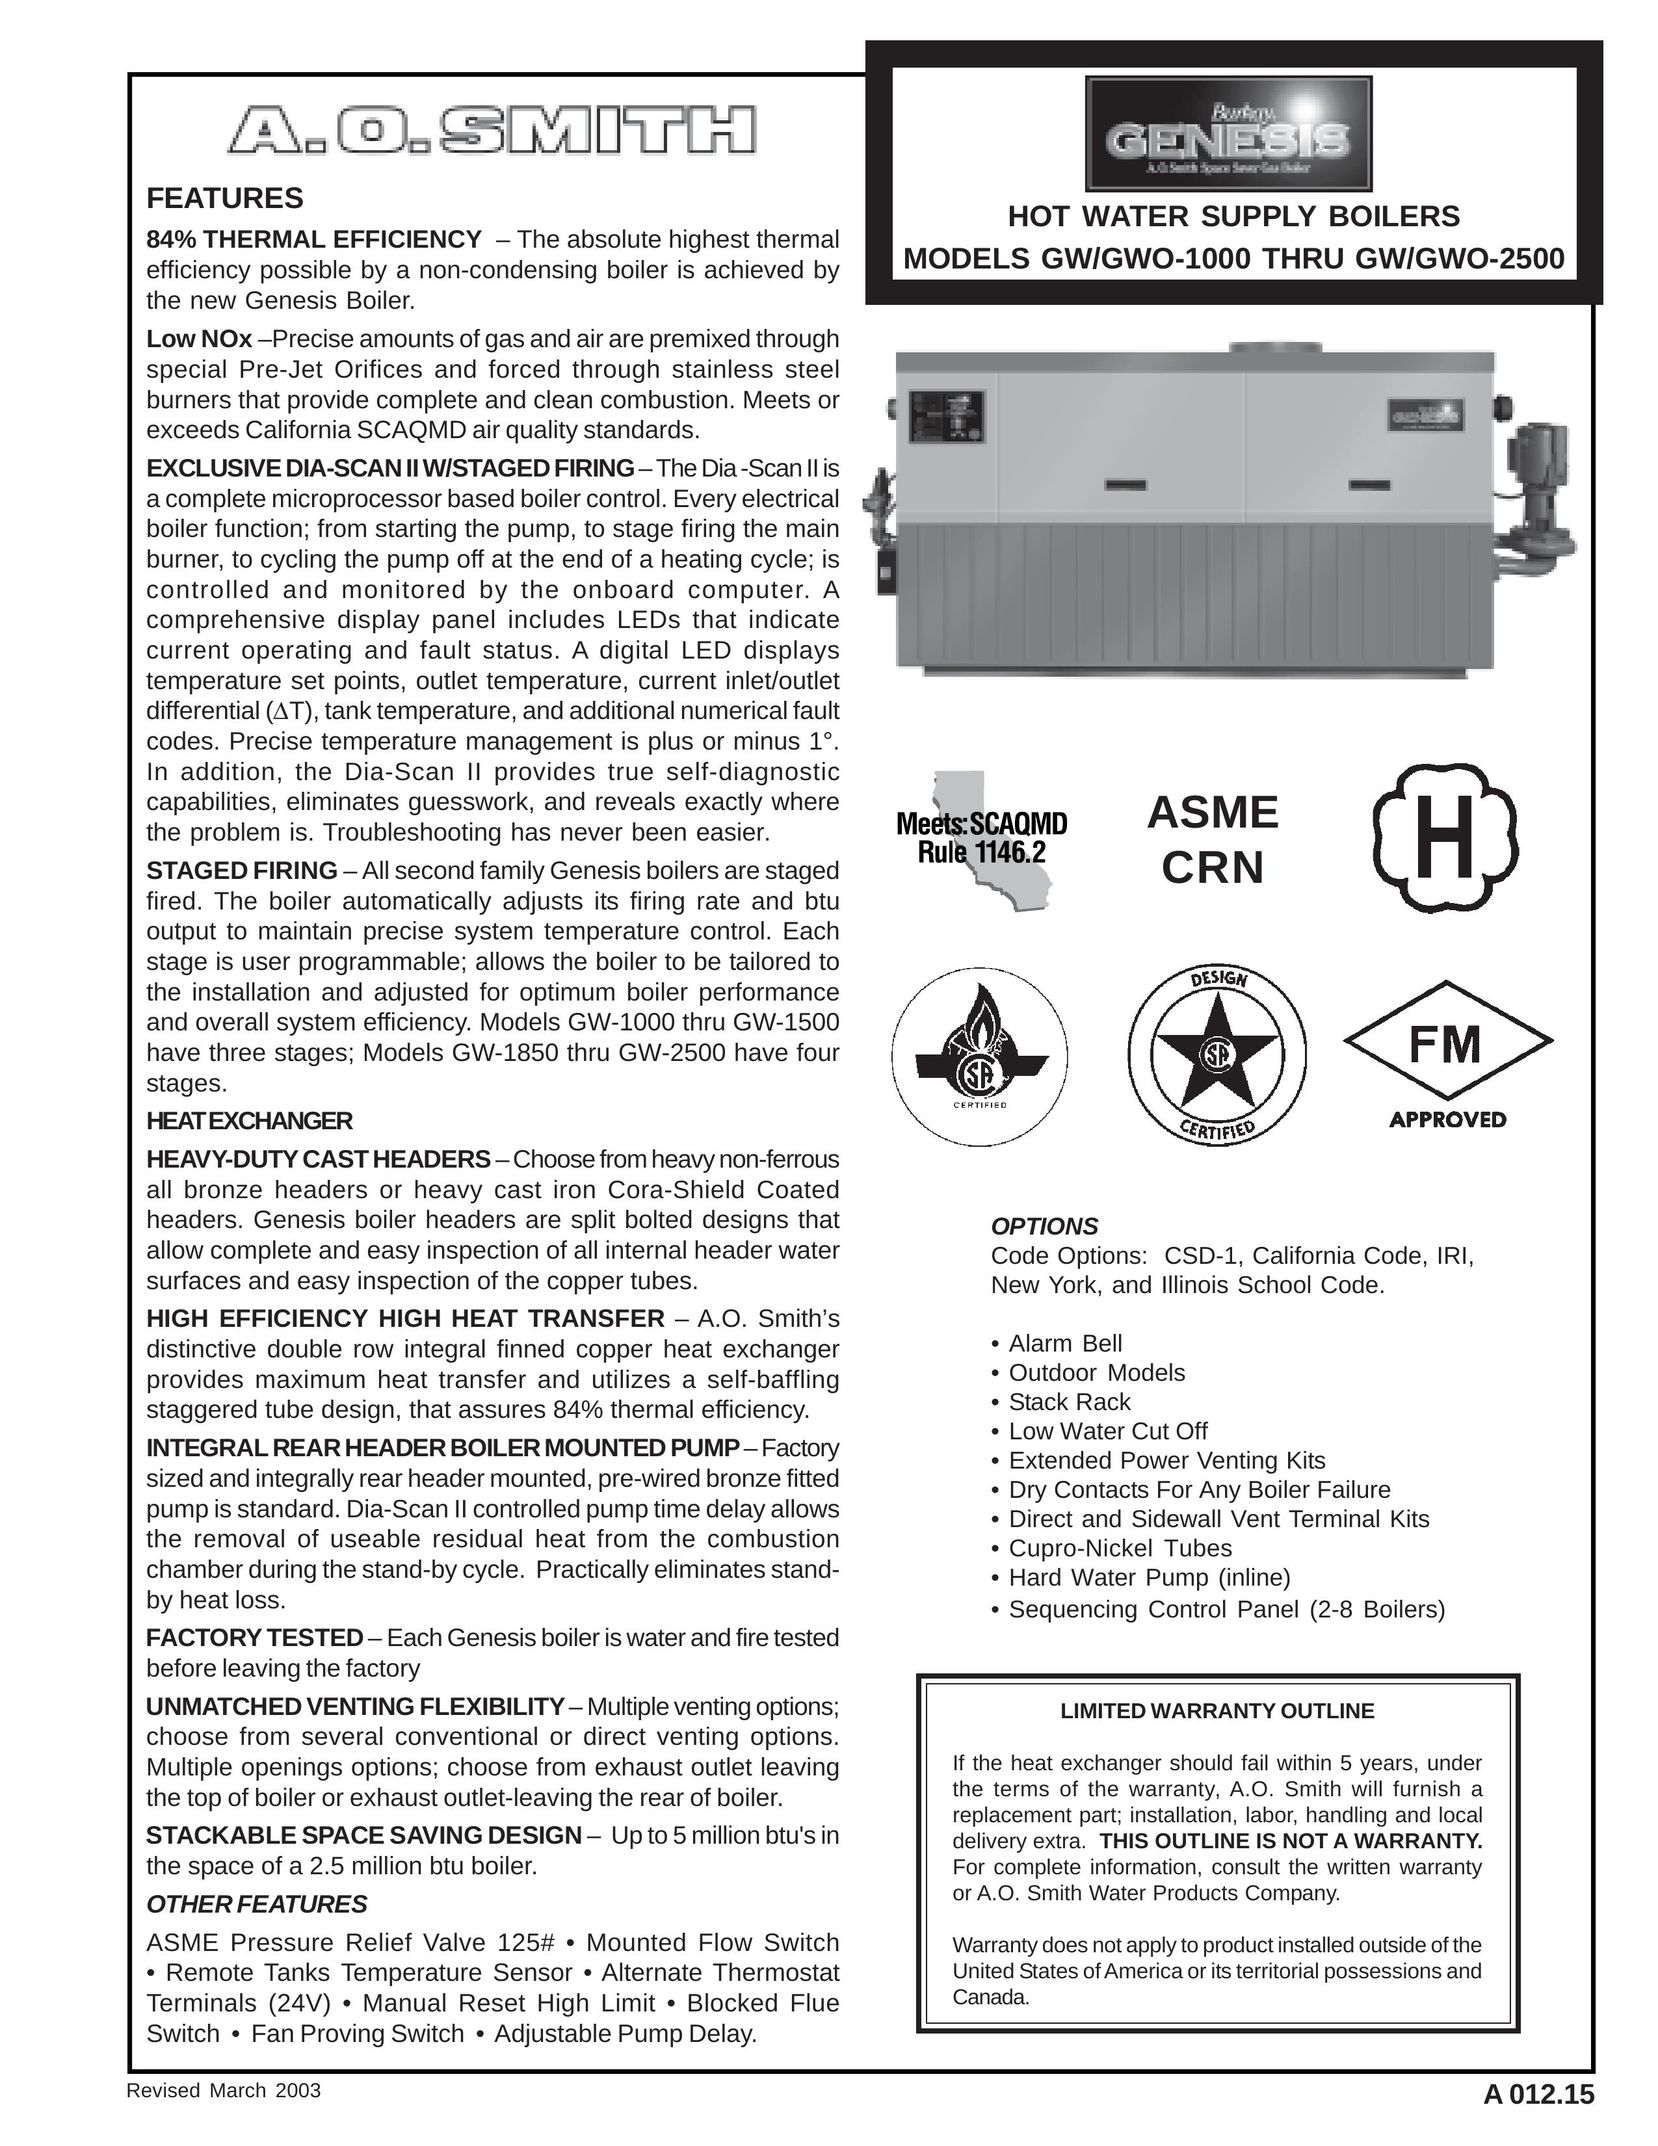 A.O. Smith GW/GWO-1000 Boiler User Manual